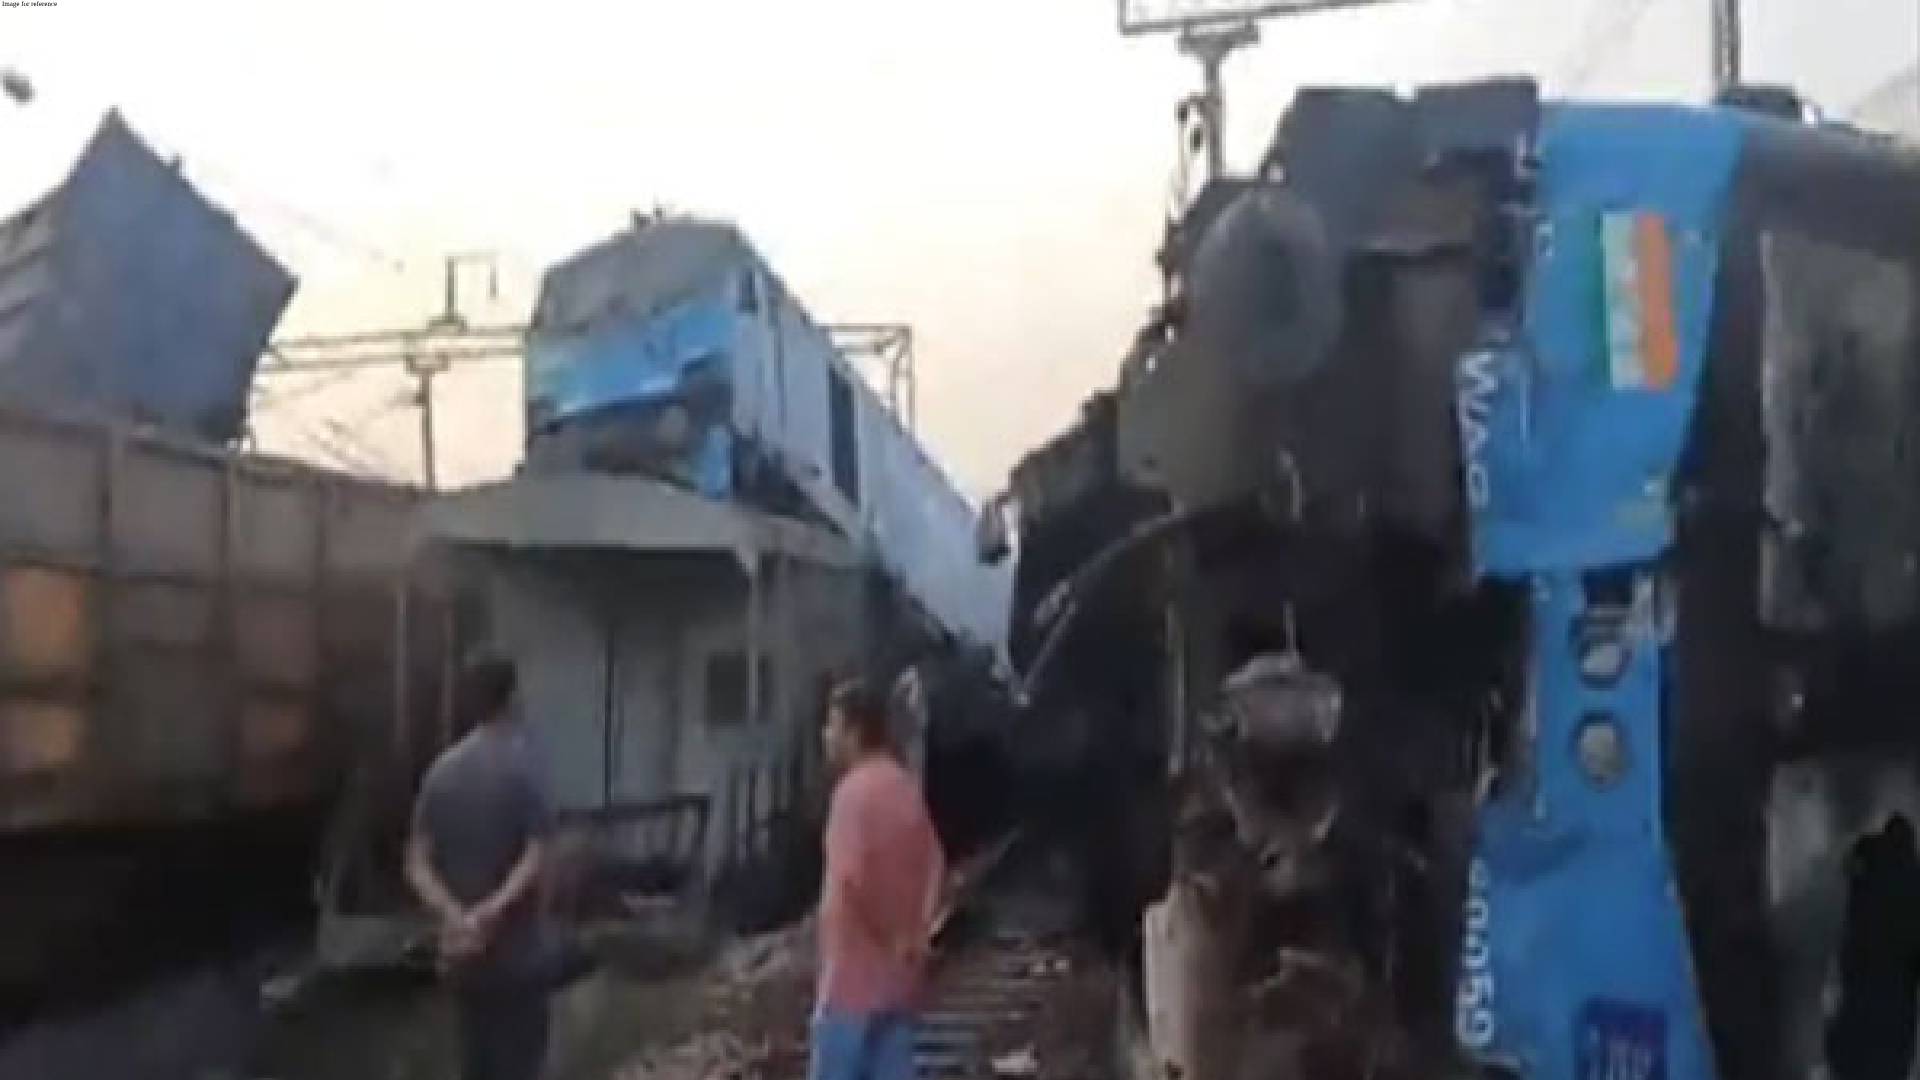 Punjab: Loco pilots injured as two goods trains collide at Fatehgarh Sahib